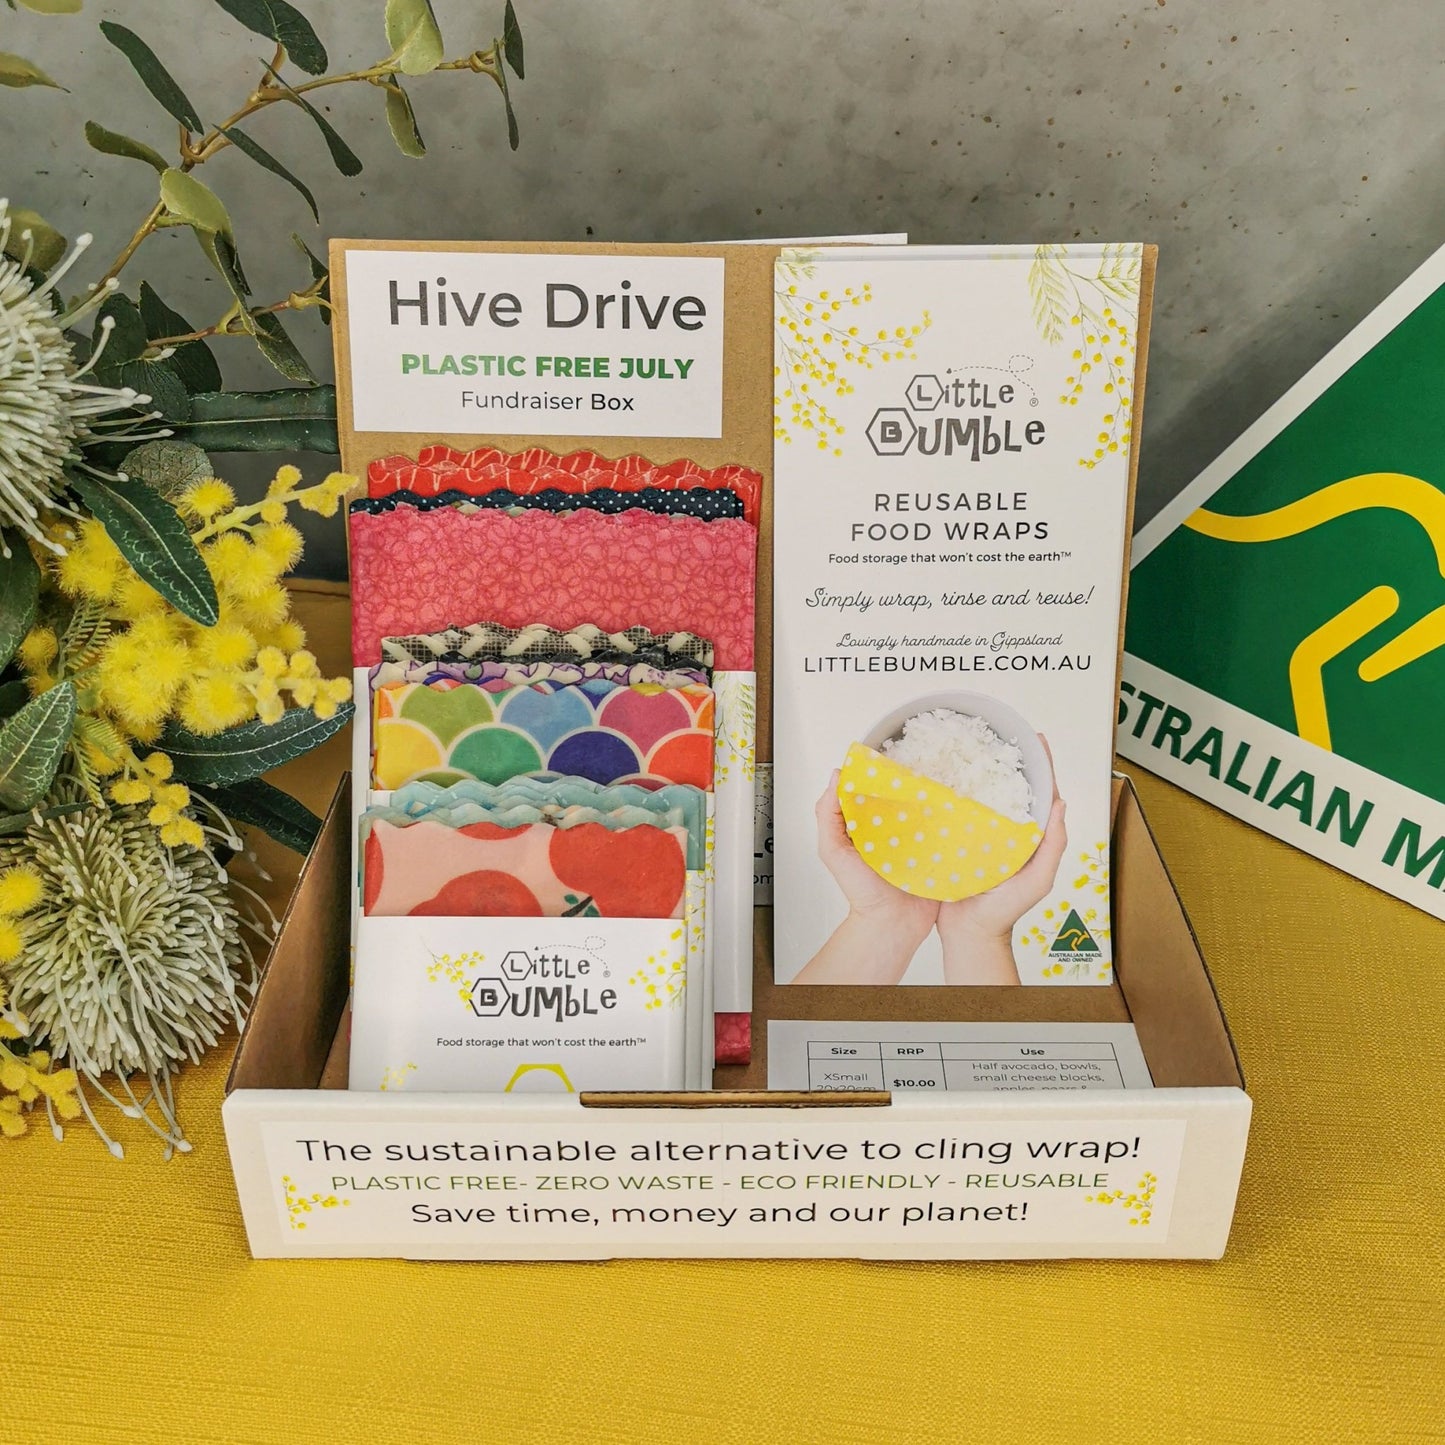 $100 Hive Drive - Little Bumble Reusable Food Wraps